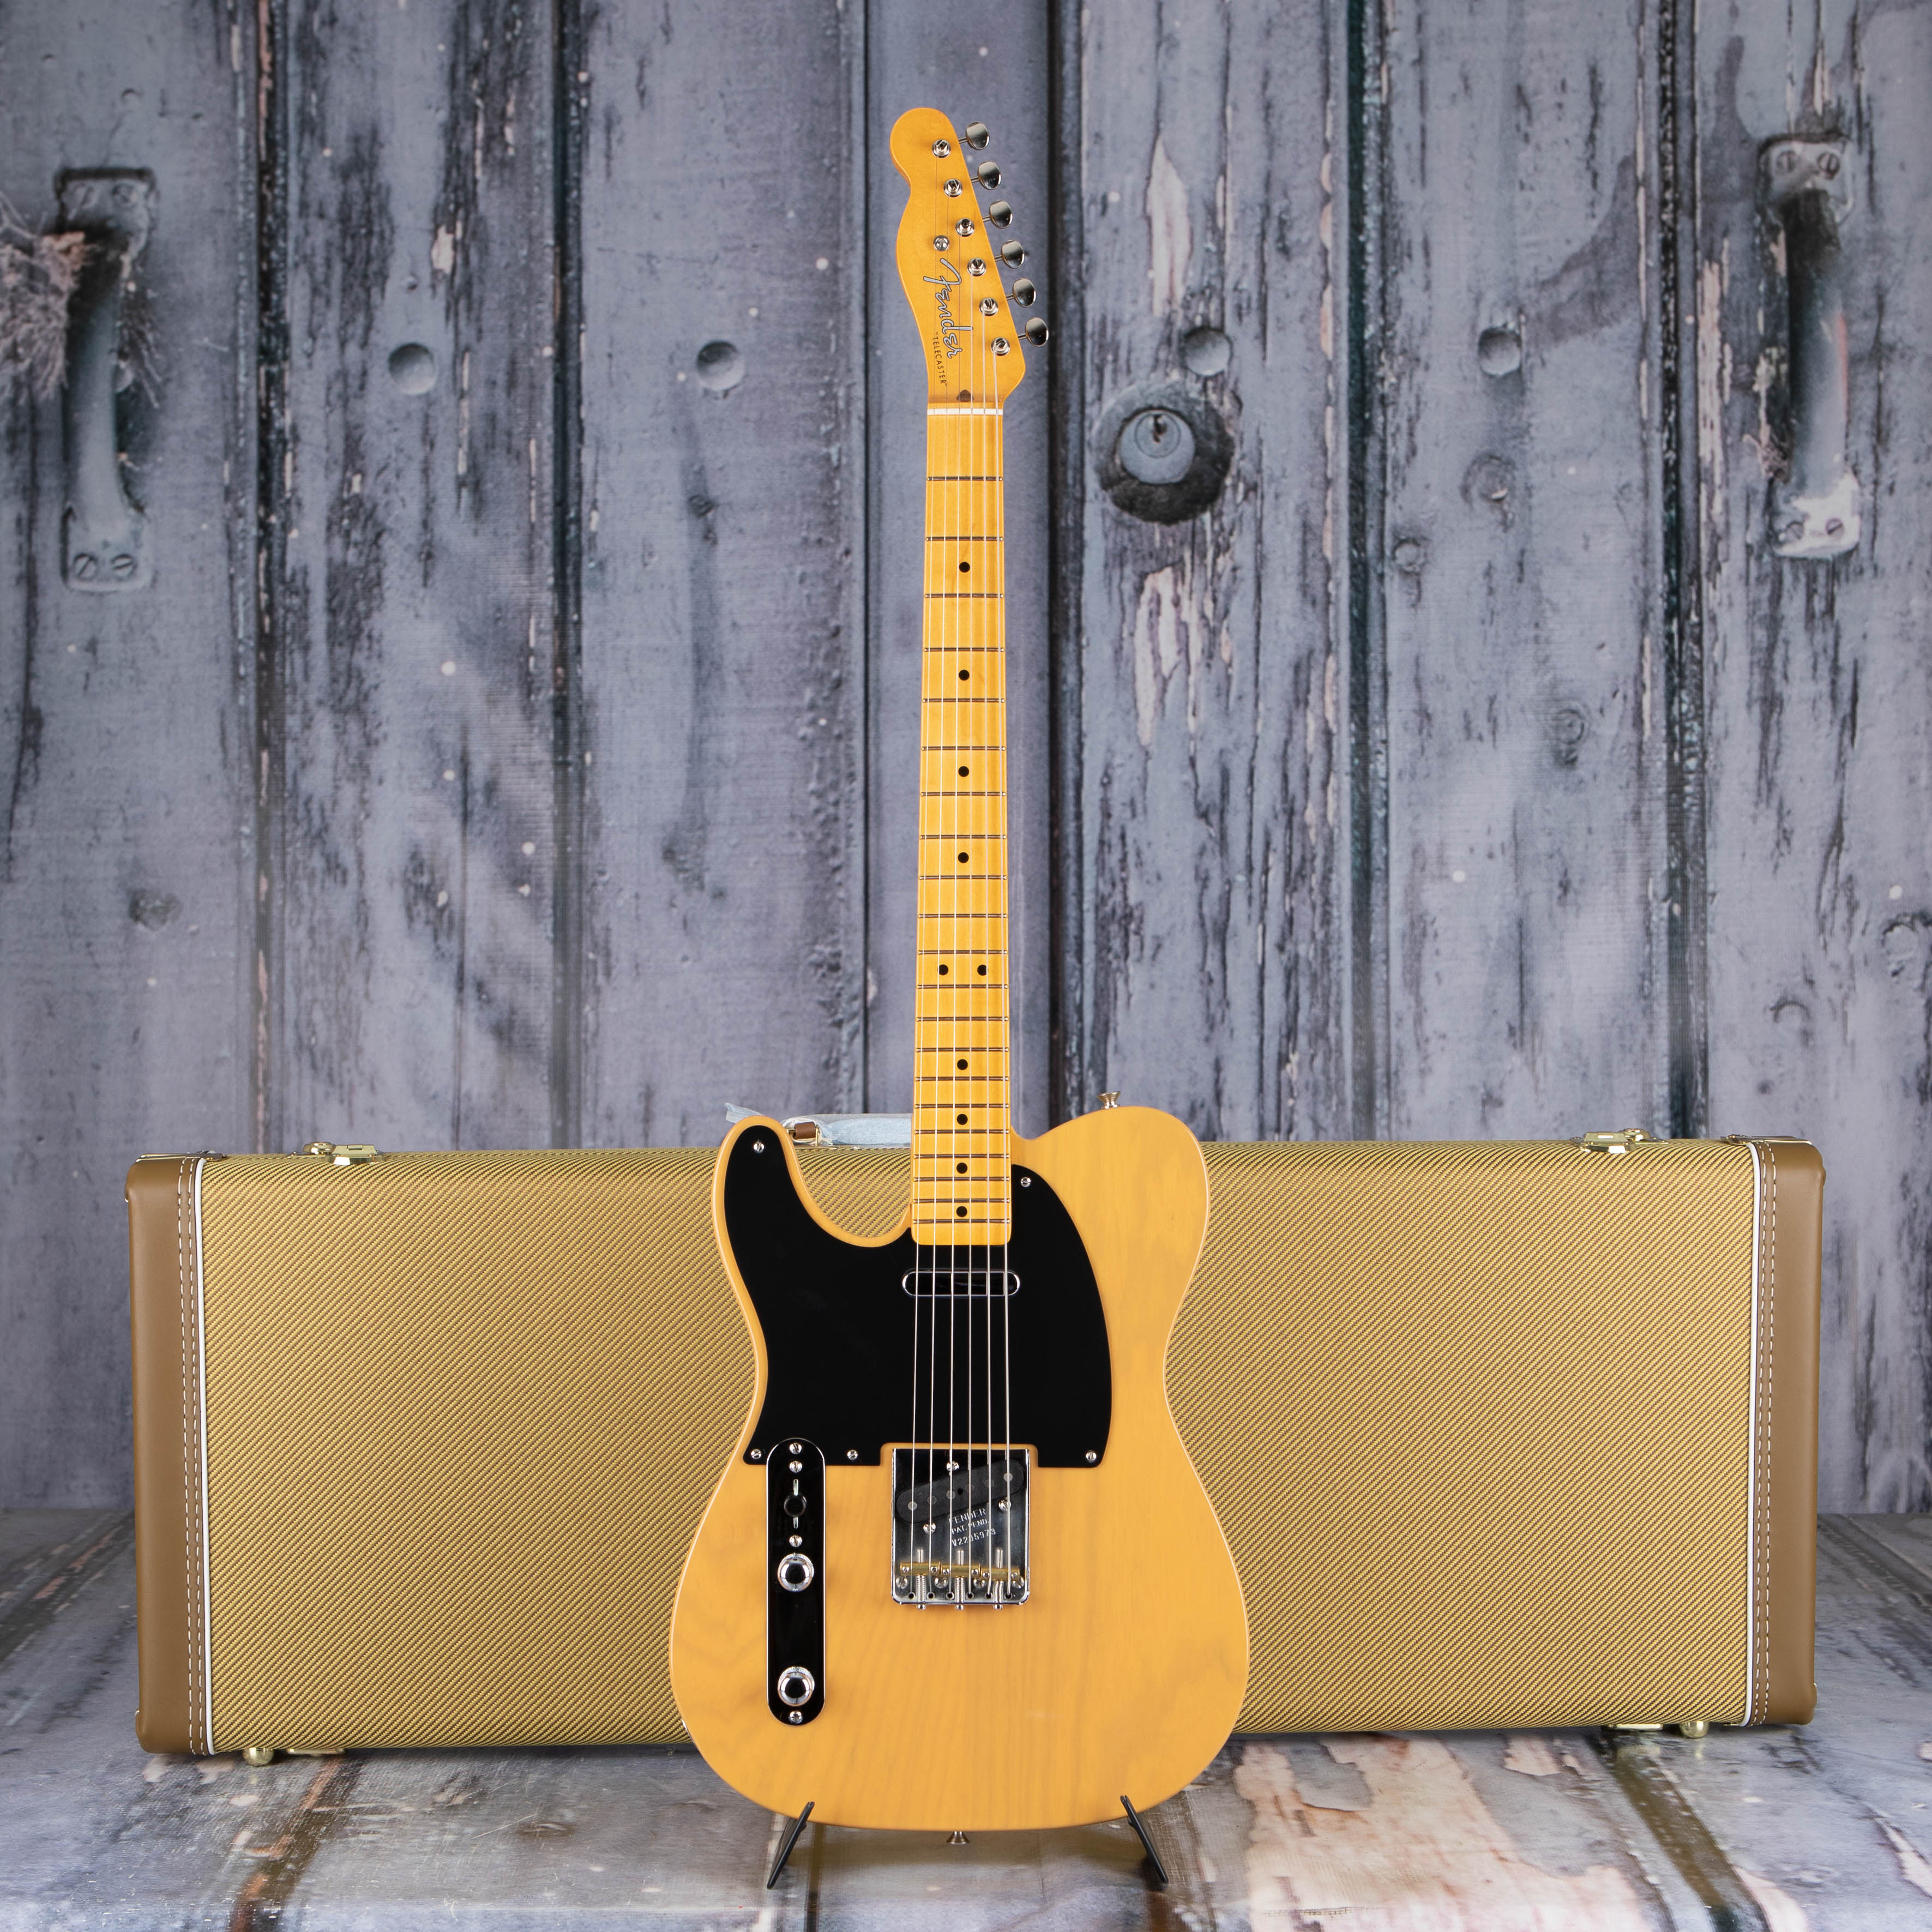 Fender American Vintage II 1951 Telecaster Left-Handed Electric Guitar, Butterscotch Blonde, case